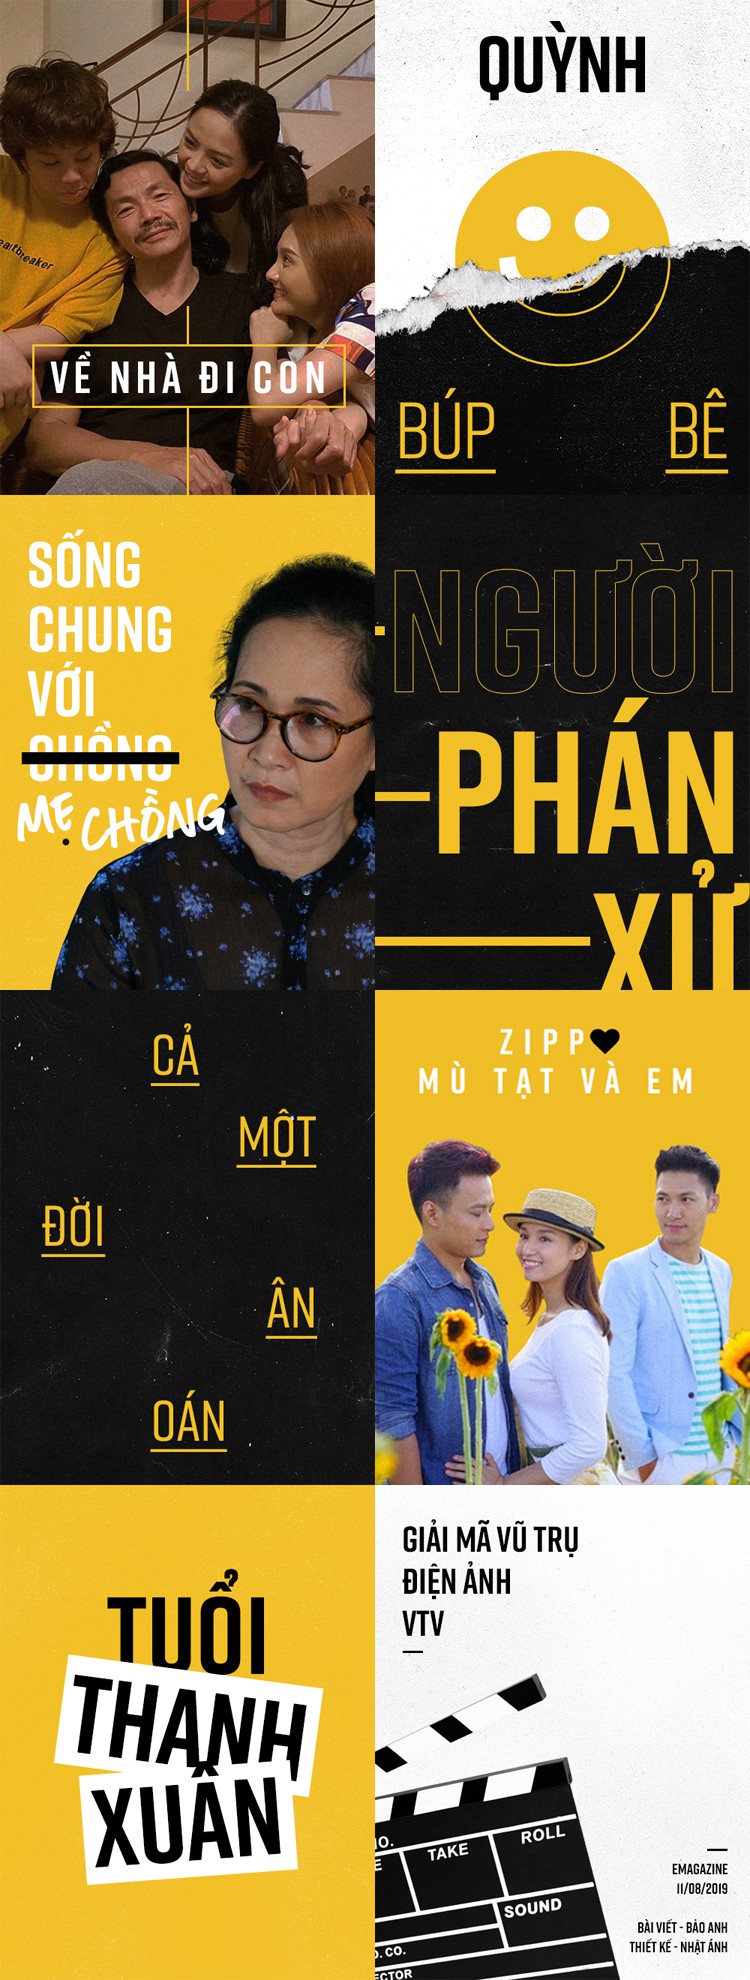 Phim truyền hình Việt trong vũ trụ VTV: Bạn đã từng tưởng tượng xem phim về cuộc chiến giữa những người ngoài hành tinh và các nhân vật của phim truyền hình Việt Nam? VTV đã thực hiện được điều đó. Hãy cùng VTV khám phá những bộ phim độc đáo về chủ đề vũ trụ này.